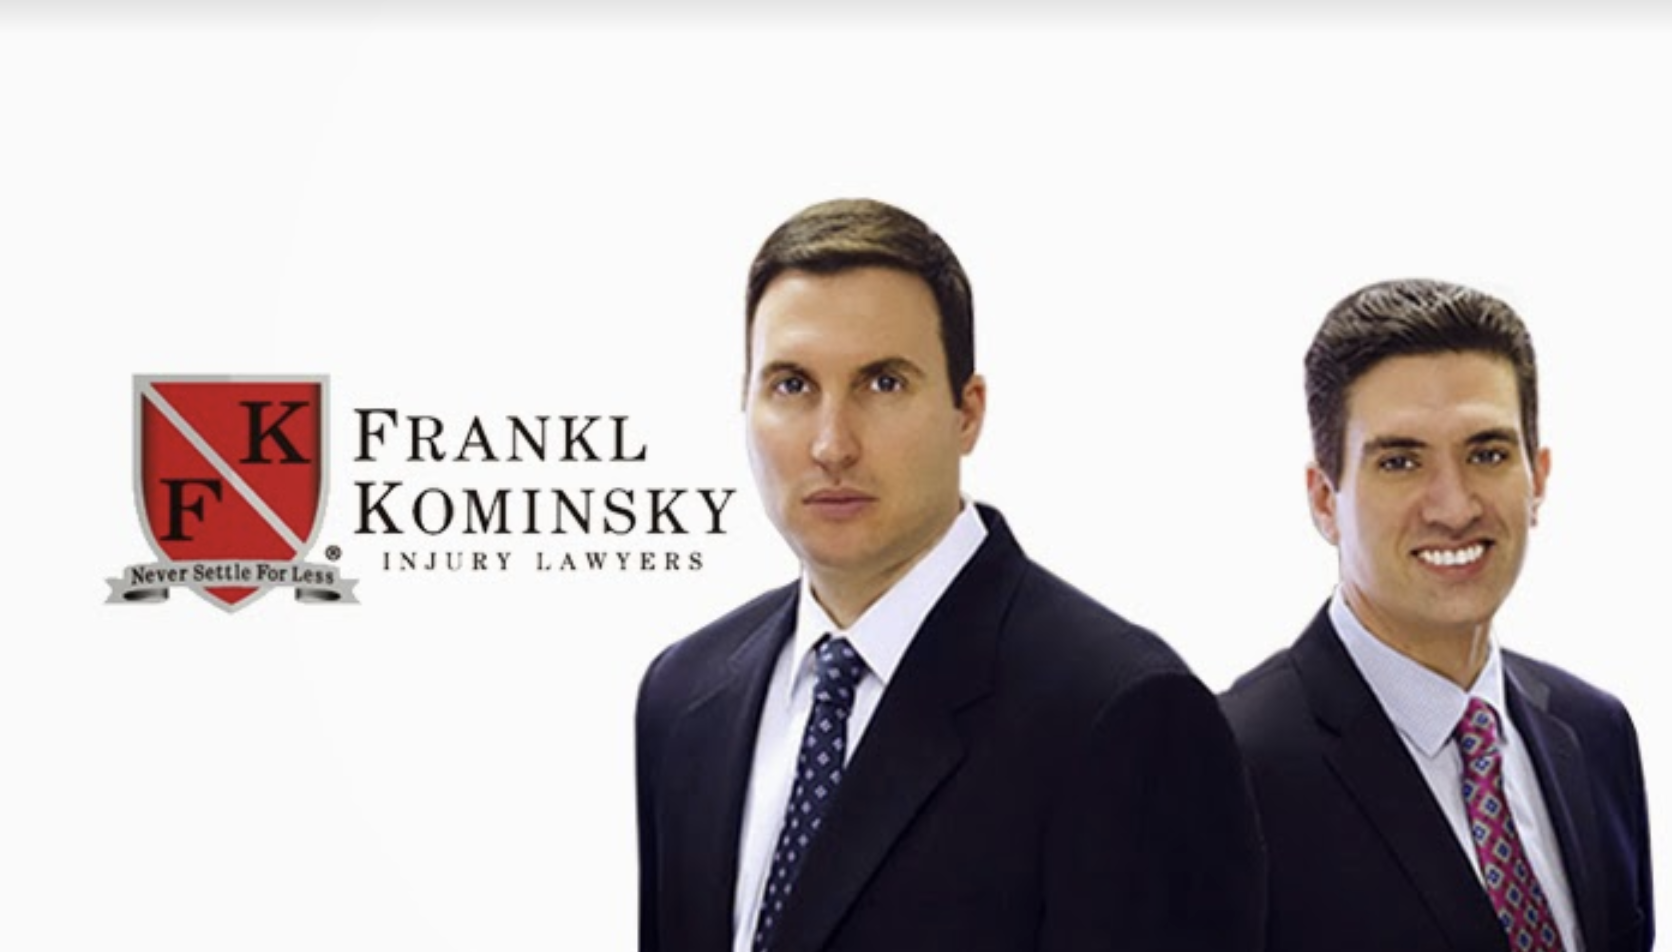 Frankl & Kominsky Injury Lawyers Photo